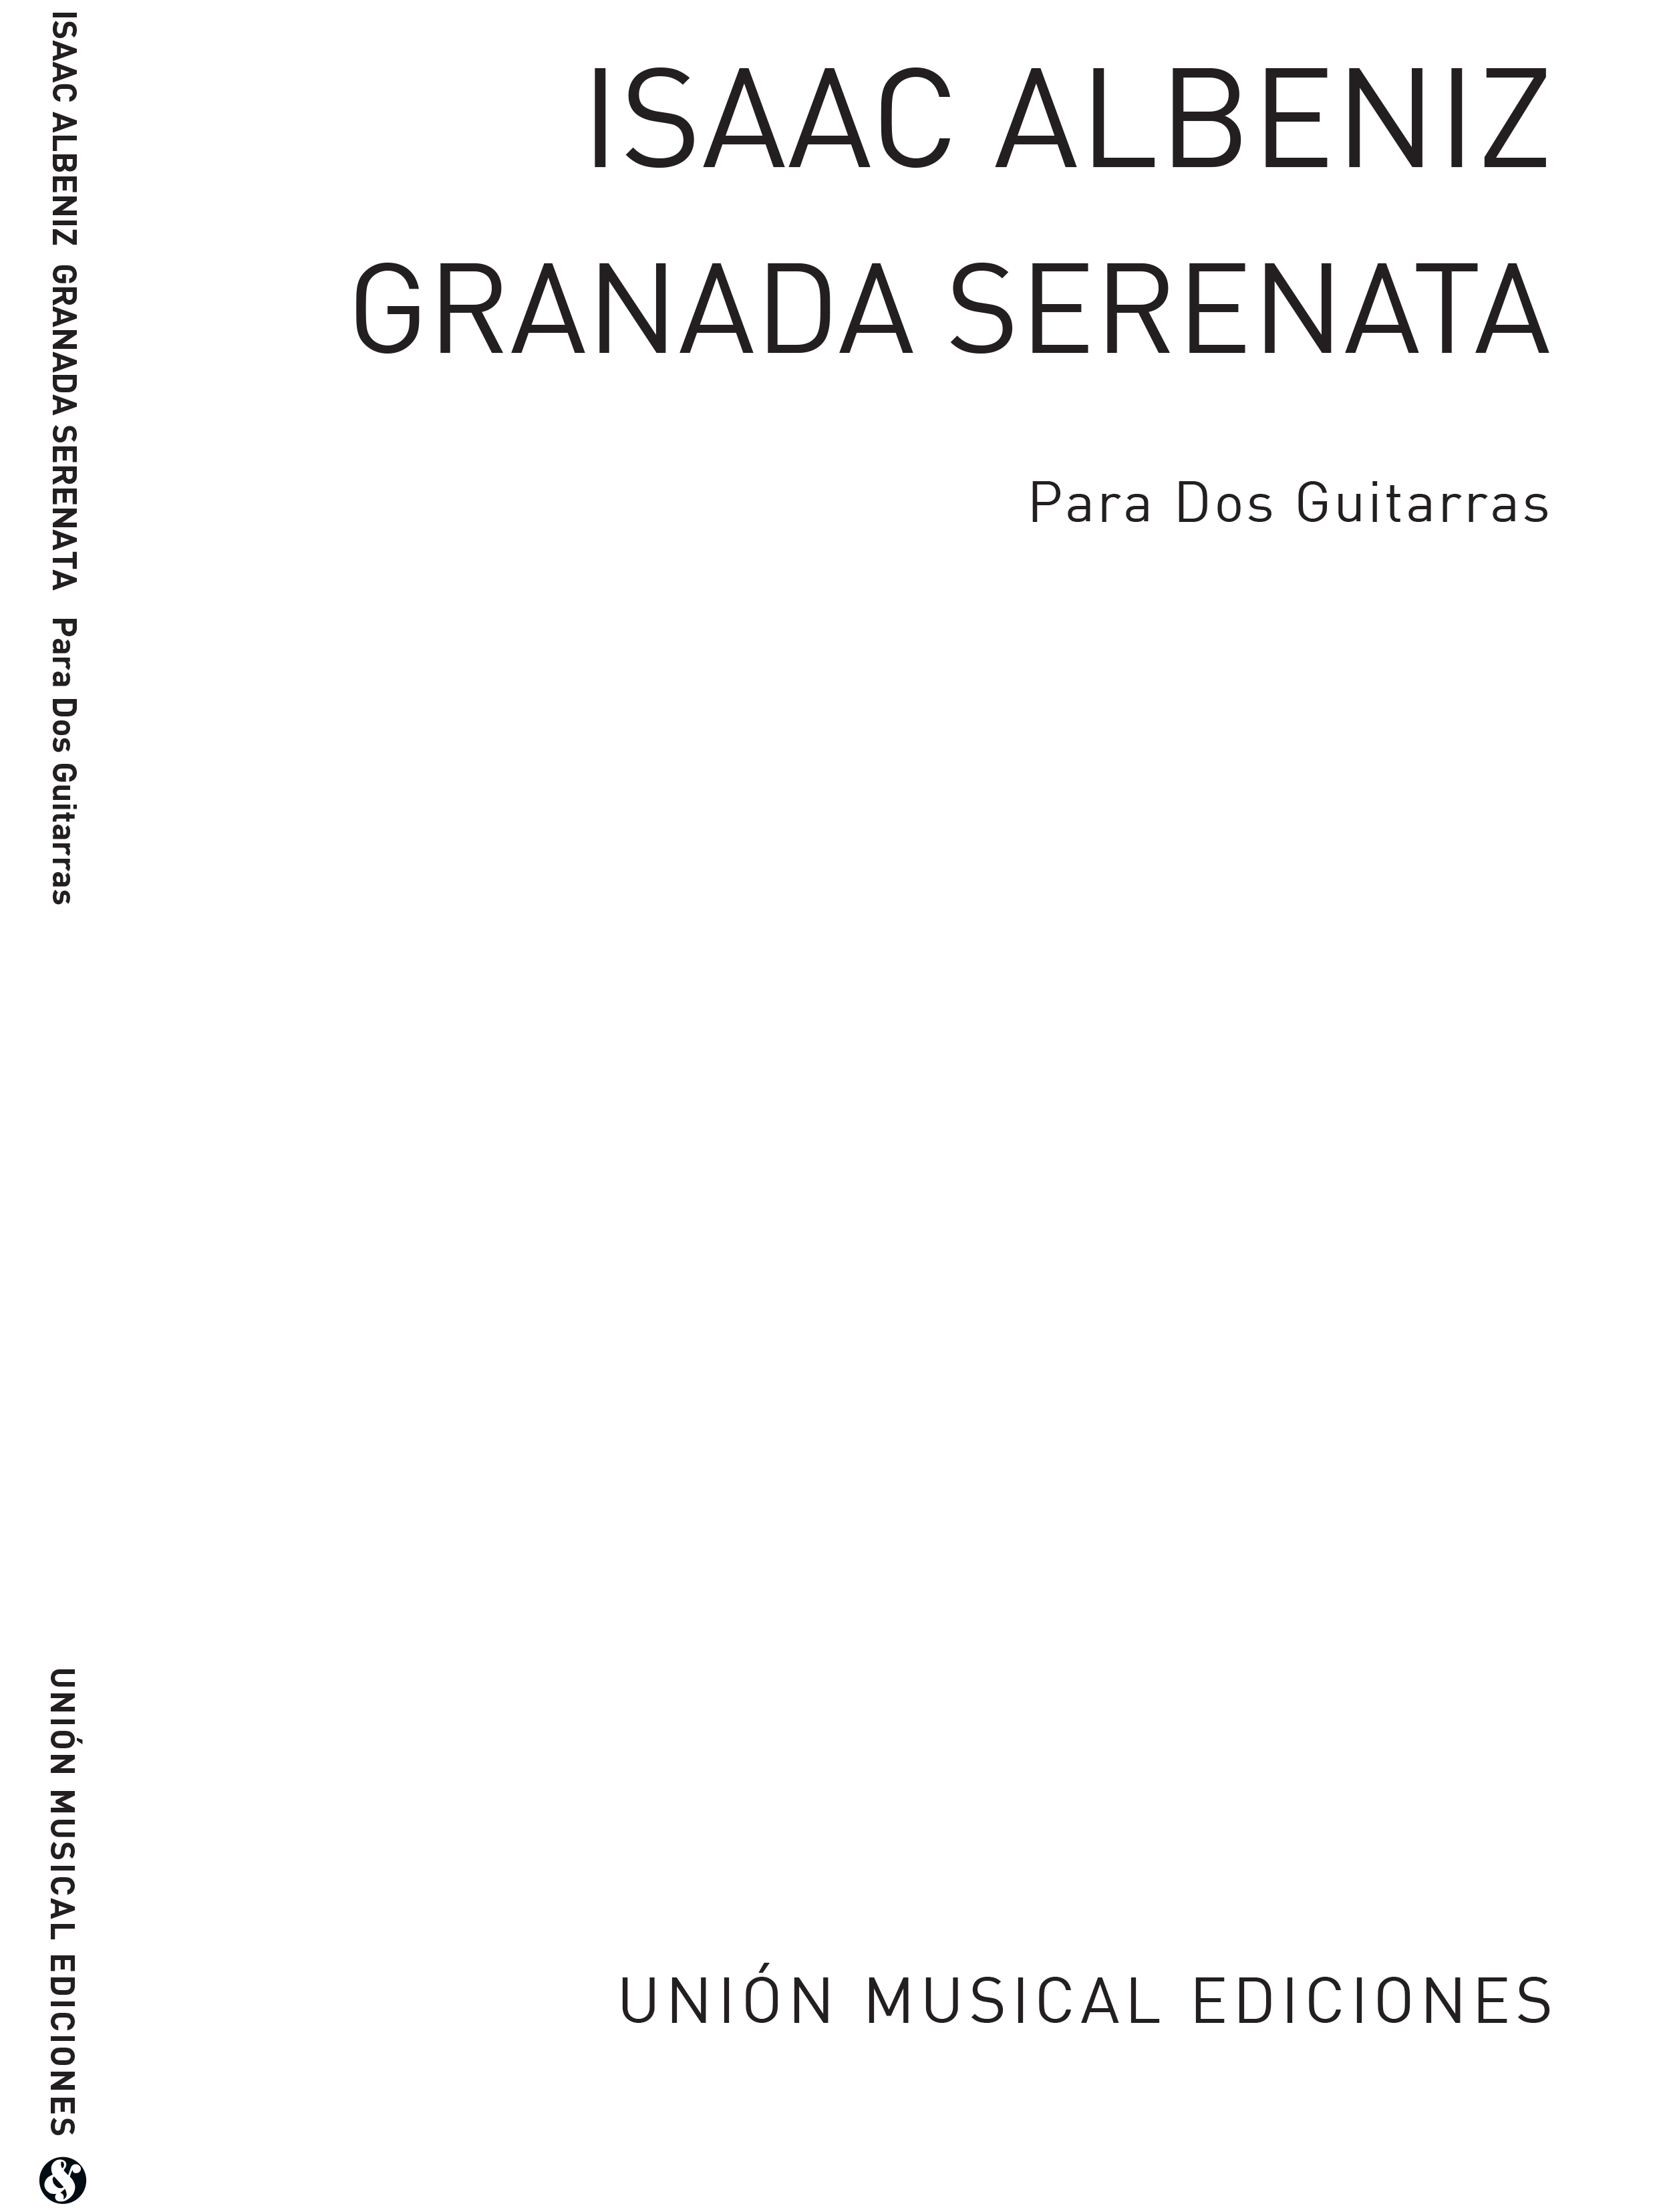 Isaac Albniz: Granada Serenata: Guitar: Instrumental Work